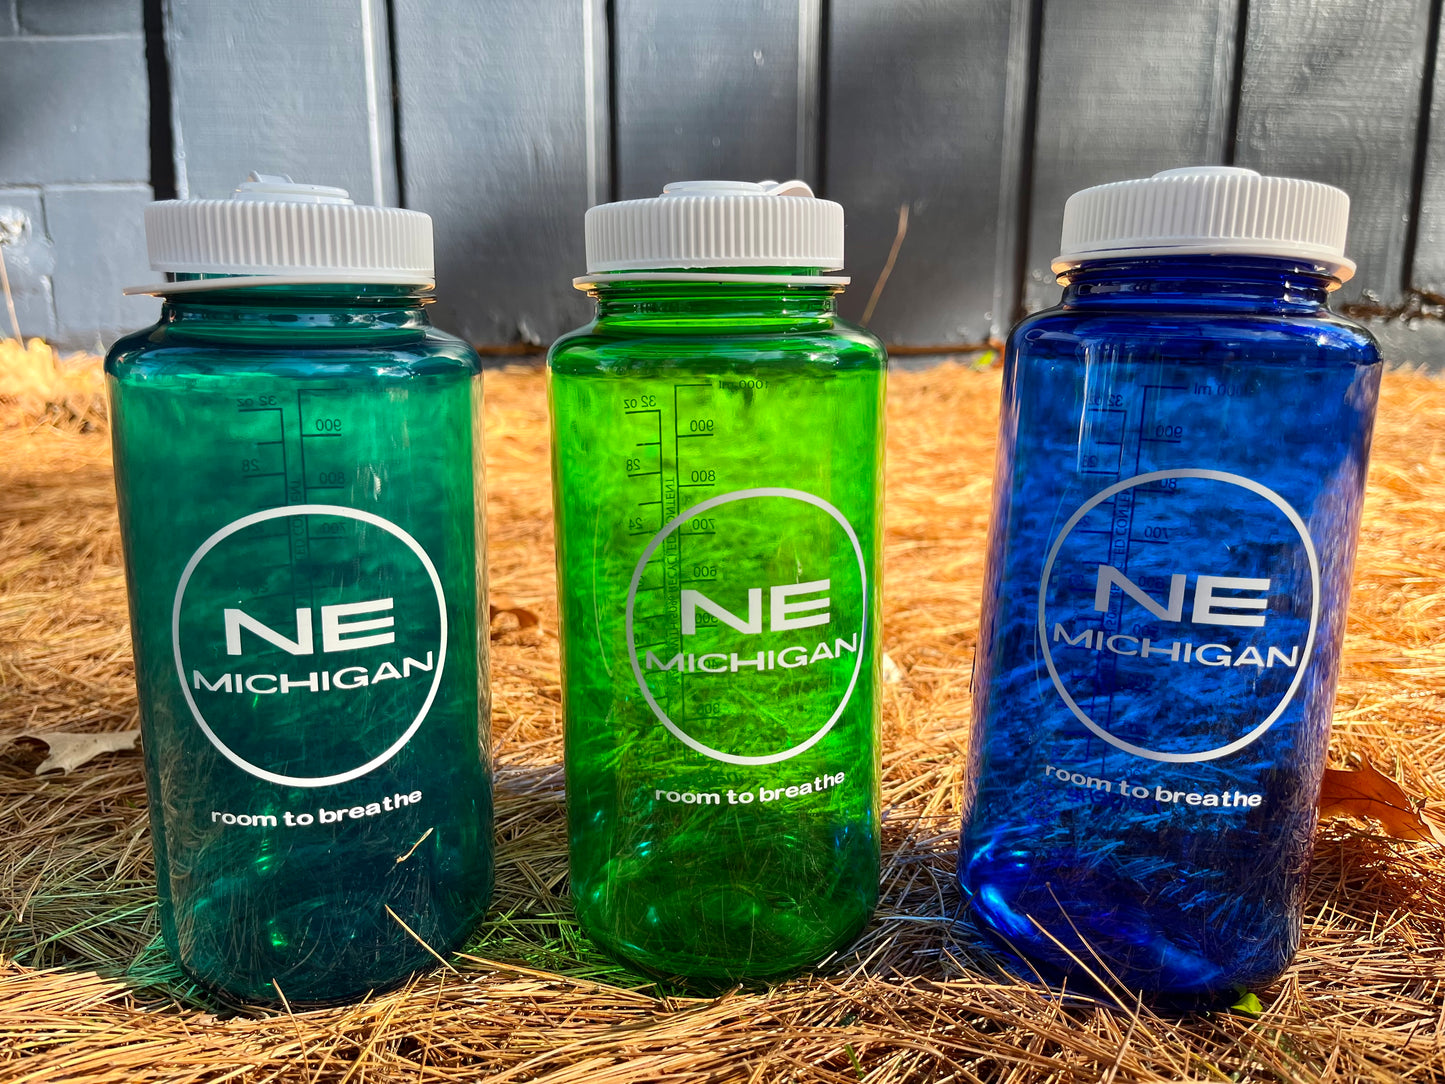 NE Michigan Nalgene Water Bottle: Navy